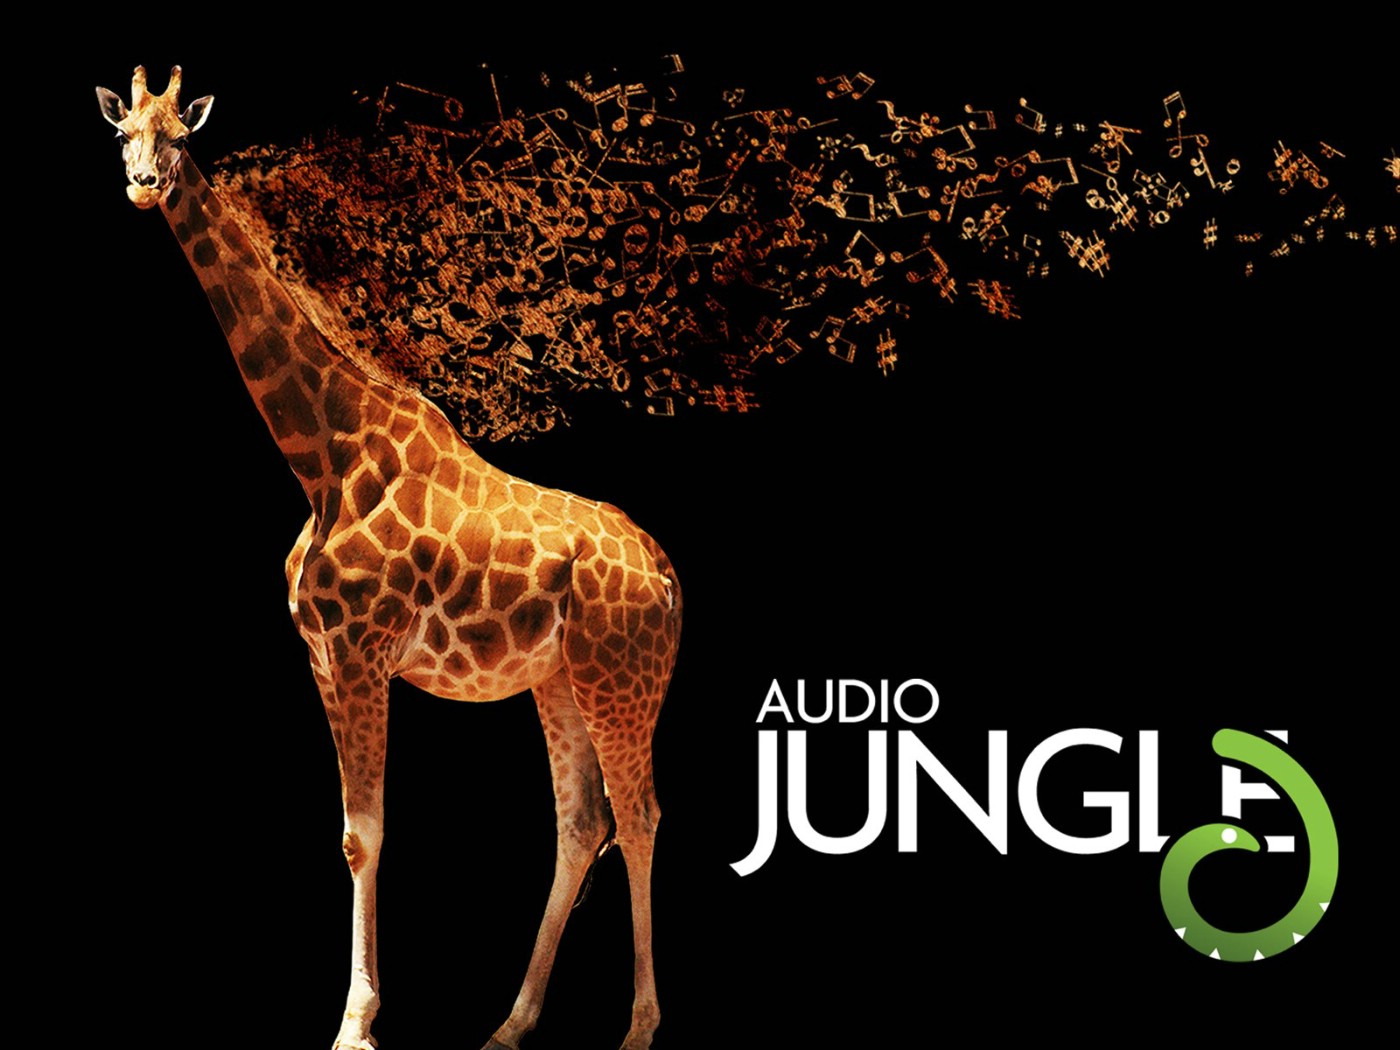 壁纸1400x1050 长颈鹿 Audio Jungle 创意壁纸壁纸 Audio Jungle 主题设计壁纸壁纸 Audio Jungle 主题设计壁纸图片 Audio Jungle 主题设计壁纸素材 插画壁纸 插画图库 插画图片素材桌面壁纸